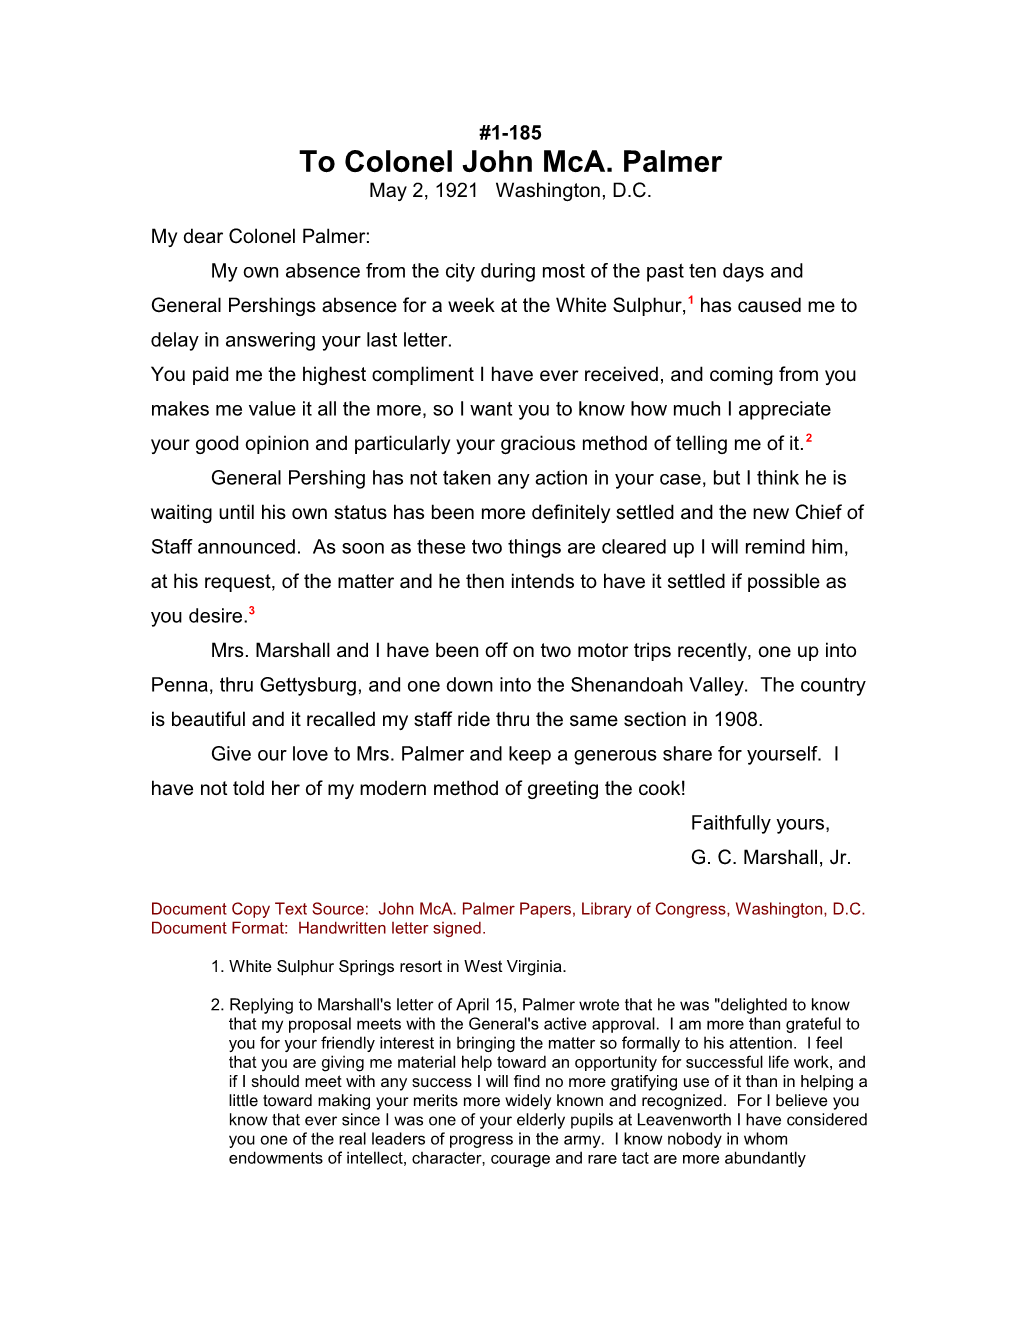 To Colonel John Mca. Palmer